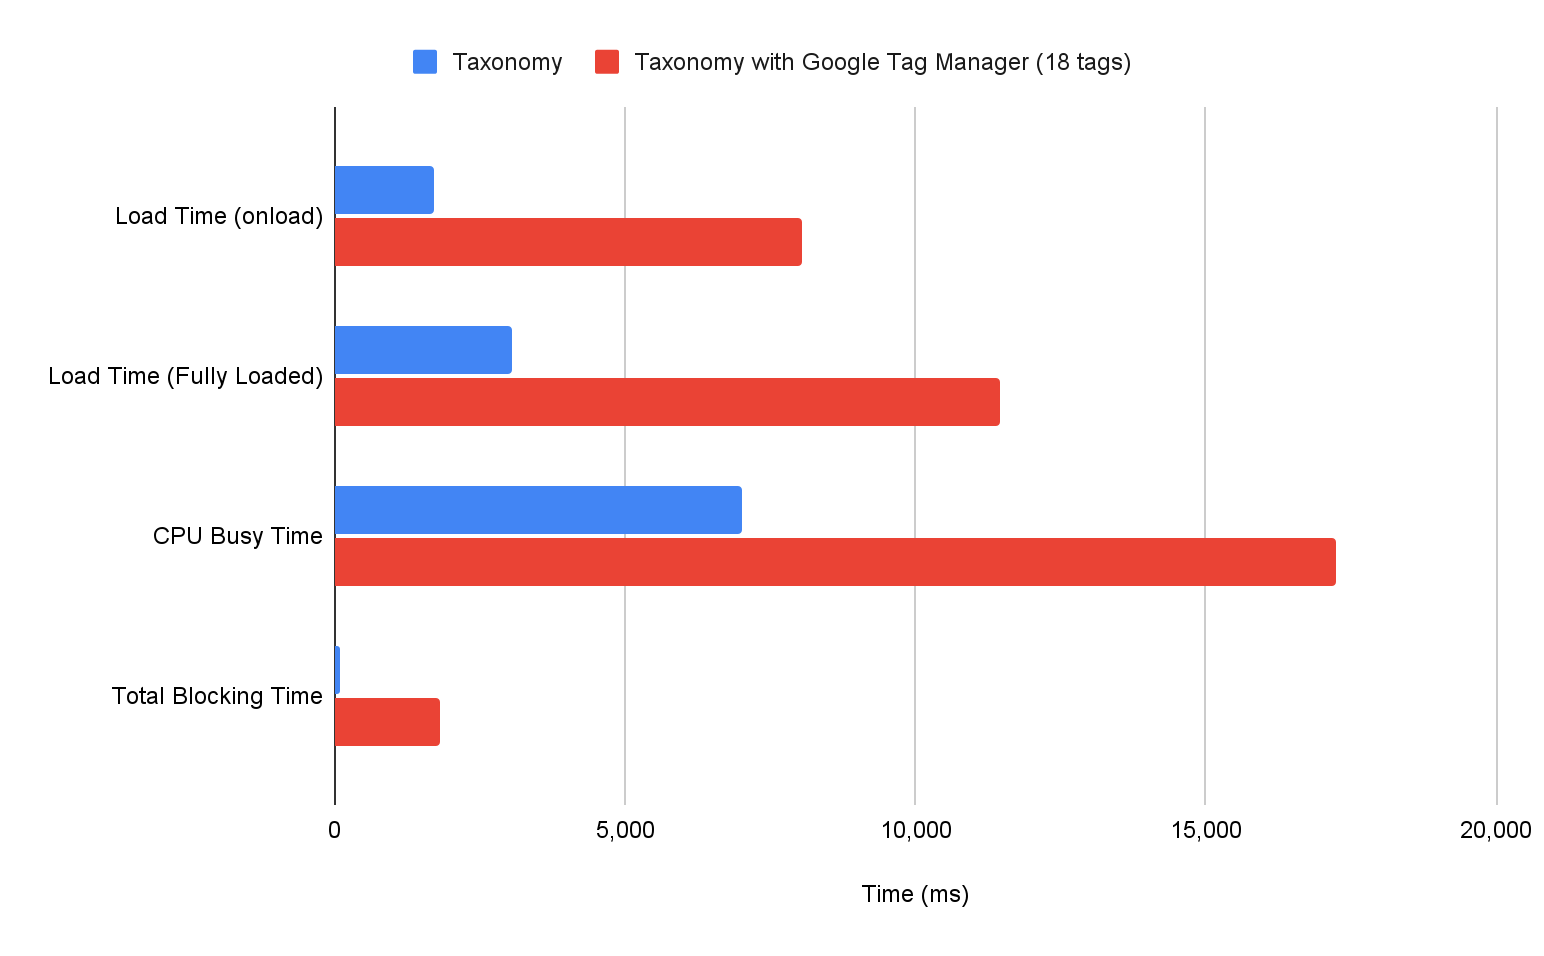 תרשים עמודות שמראה את ההבדל בין מדדים שונים של שיעור ה-Lab כשאתר נטען עם Google Tag Manager או בלעדיו